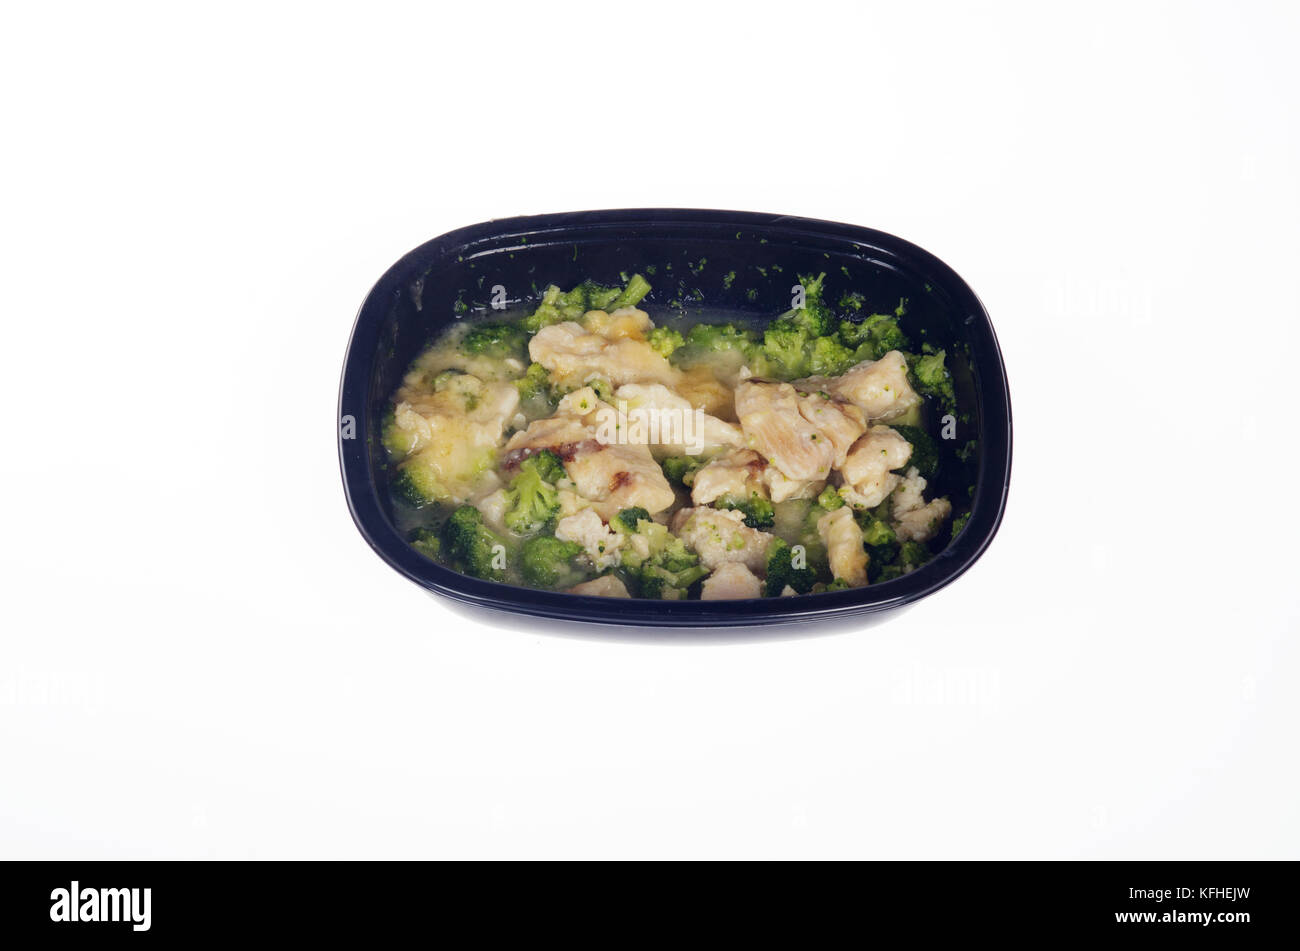 Microwaved Atkins Diet chicken tv dinner Stock Photo